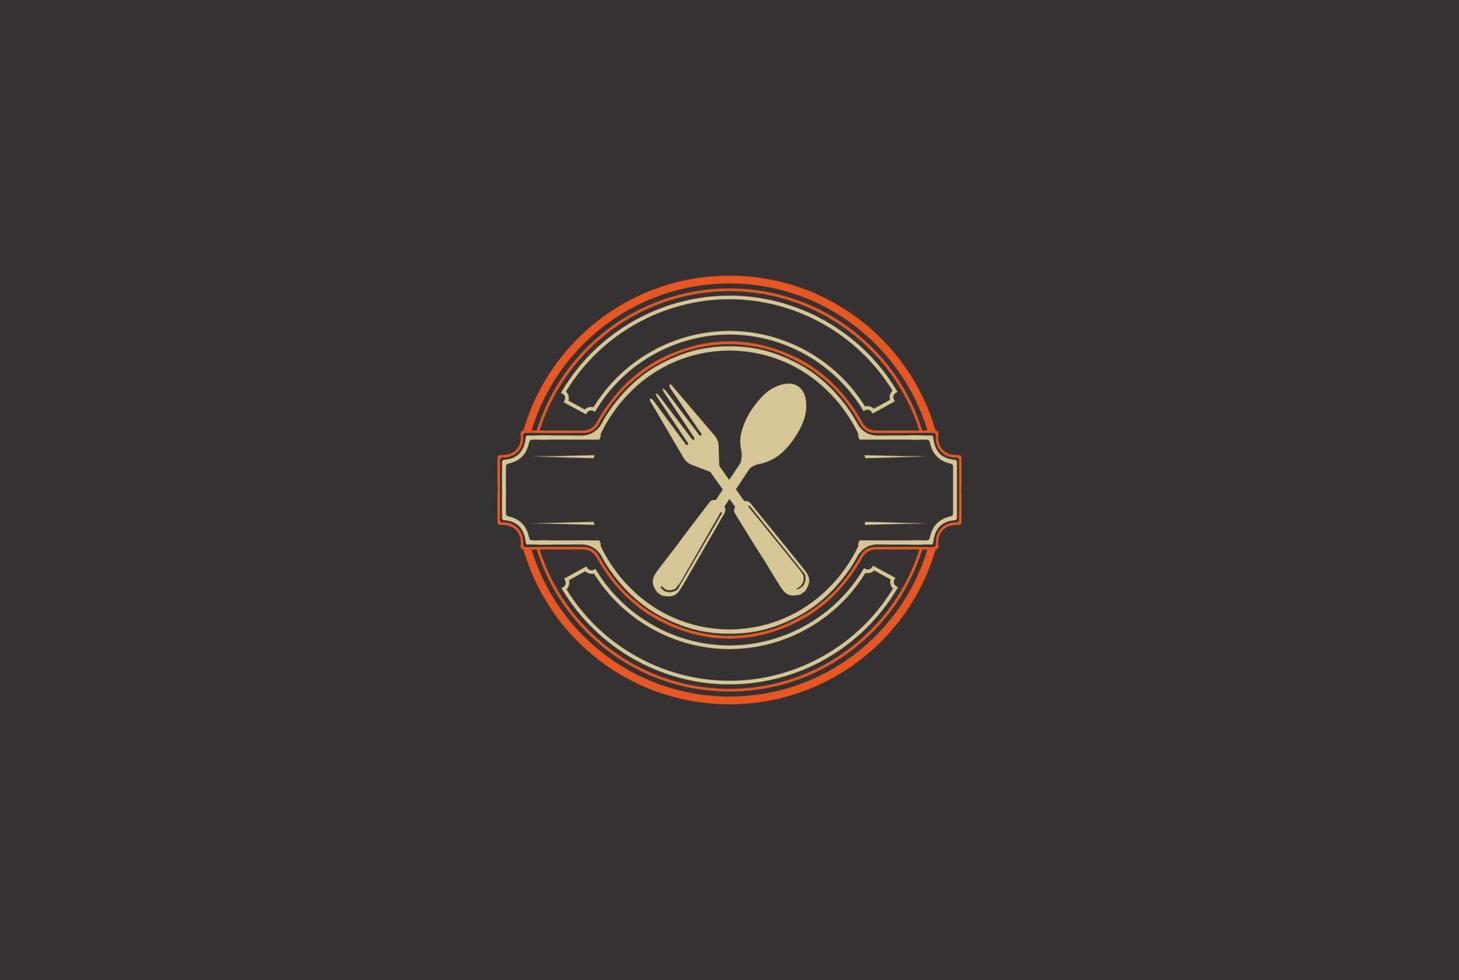 forchetta cucchiaio vintage retrò per caffè, chef e ristorante distintivo emblema etichetta logo disegno vettoriale